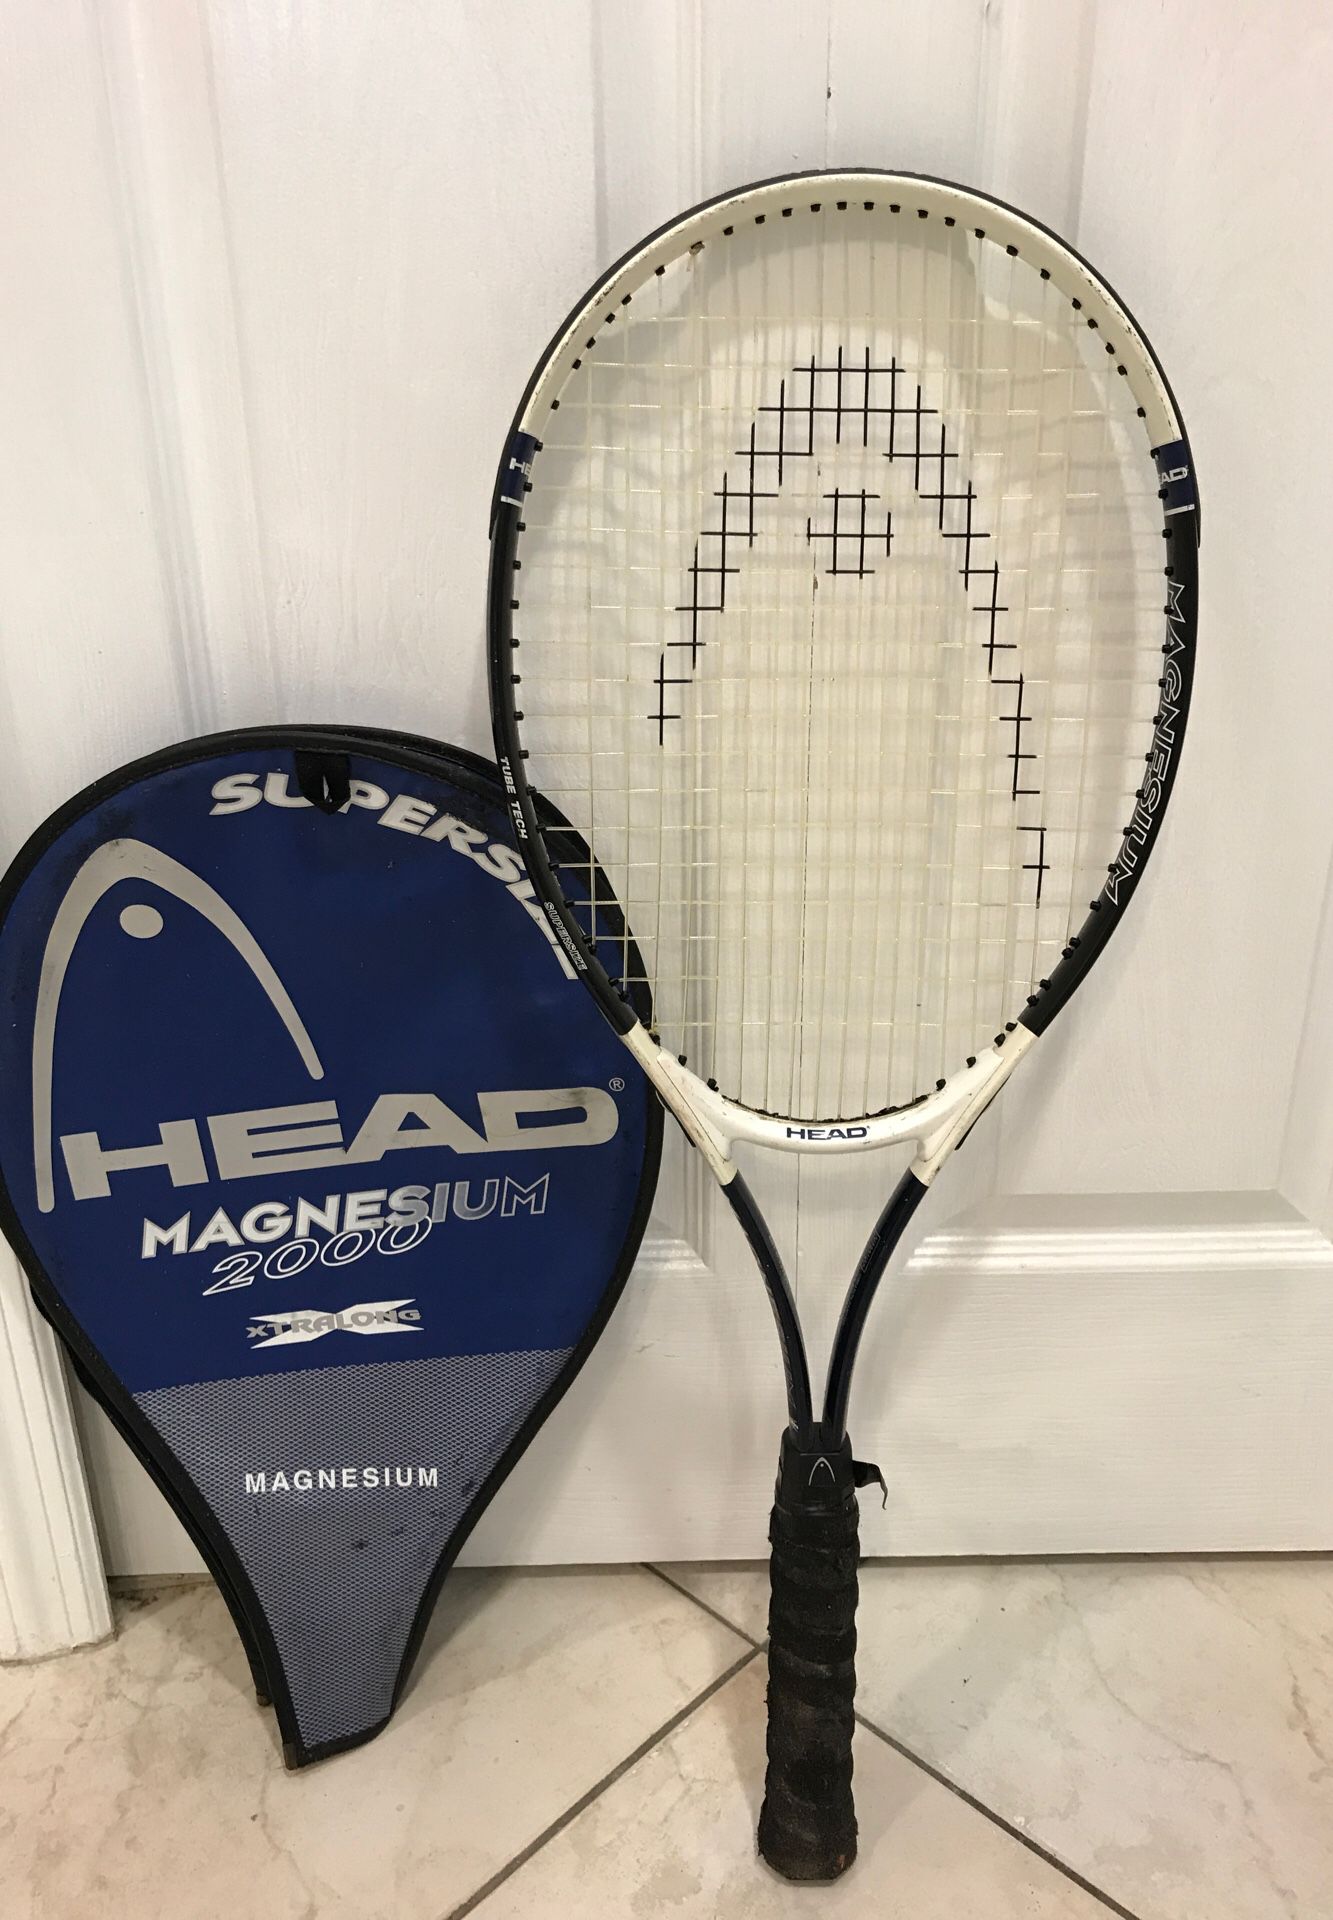 Tennis Racket (Head - Magnesium 2,000)